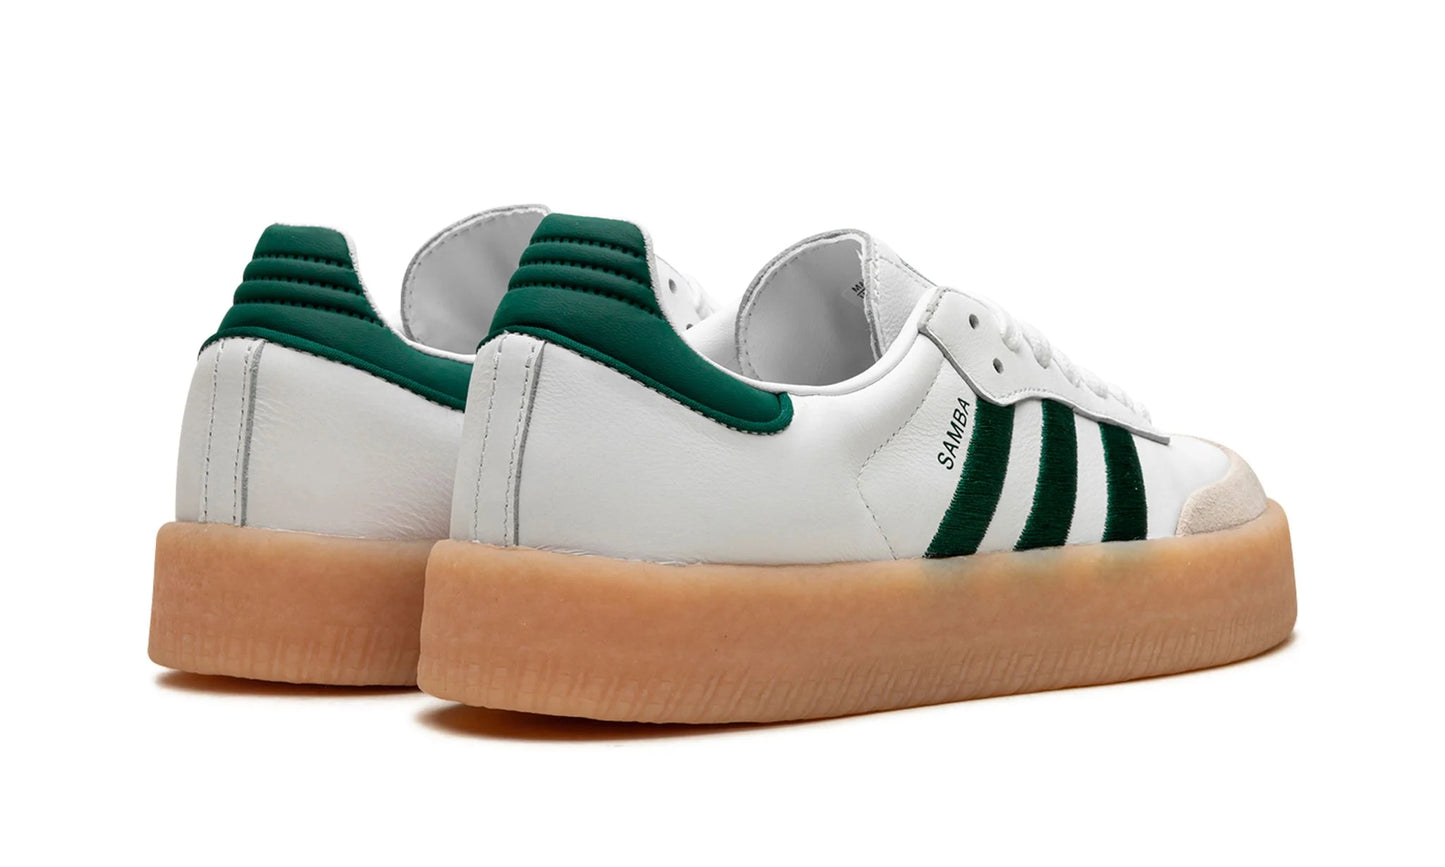 Tênis Adidas Sambae Feminino "White Green" Branco / Verde